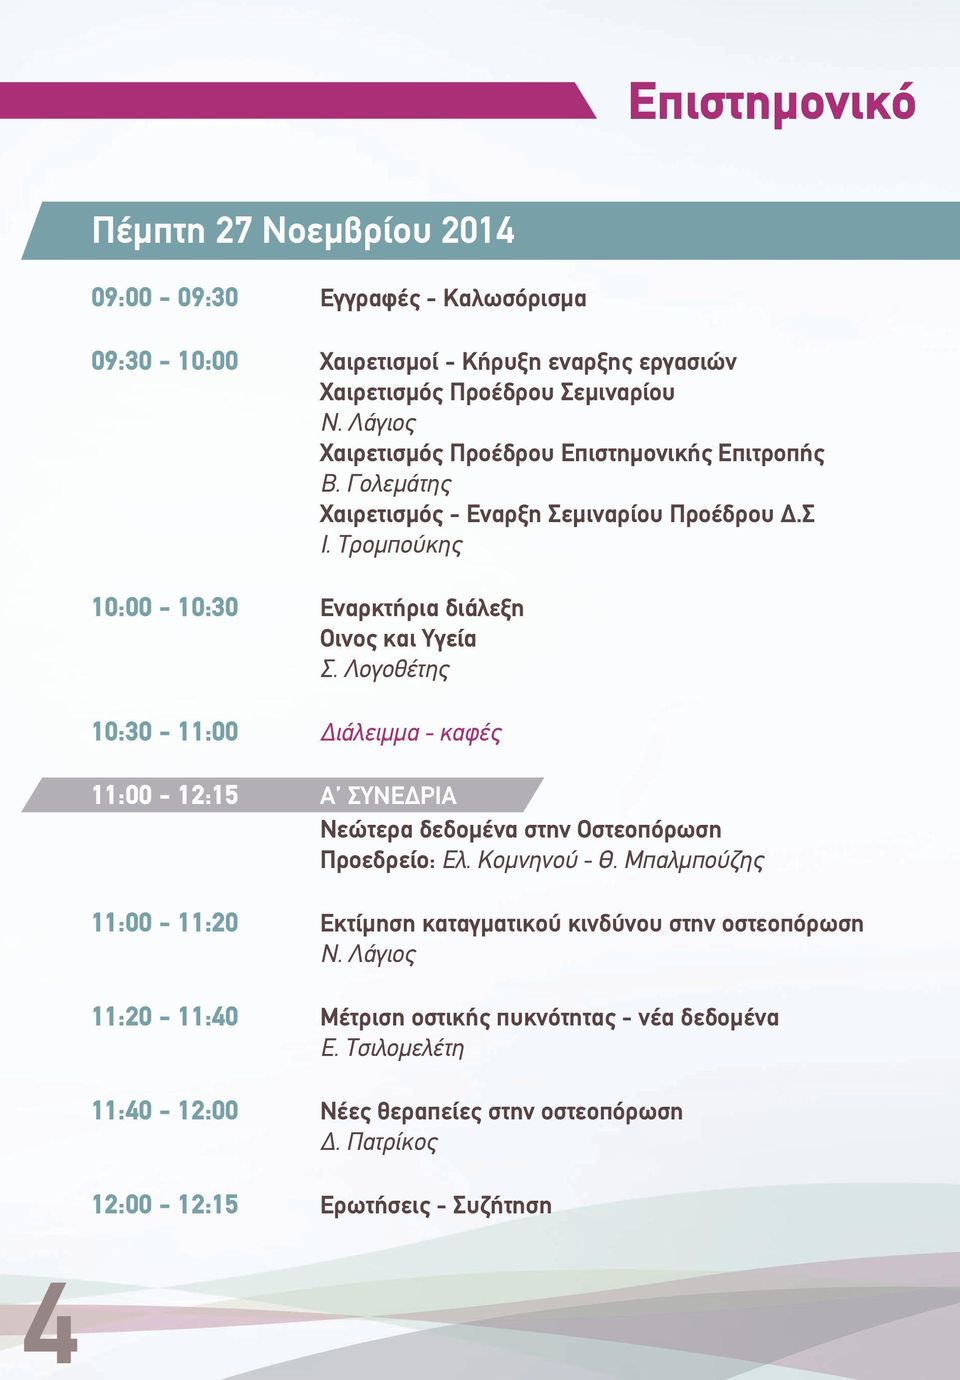 Λογοθέτης 10:30-11:00 Διάλειμμα - καφές 11:00-12:15 Α ΣΥΝΕΔΡΙΑ Νεώτερα δεδομένα στην Οστεοπόρωση Προεδρείο: Ελ. Κομνηνού - Θ.